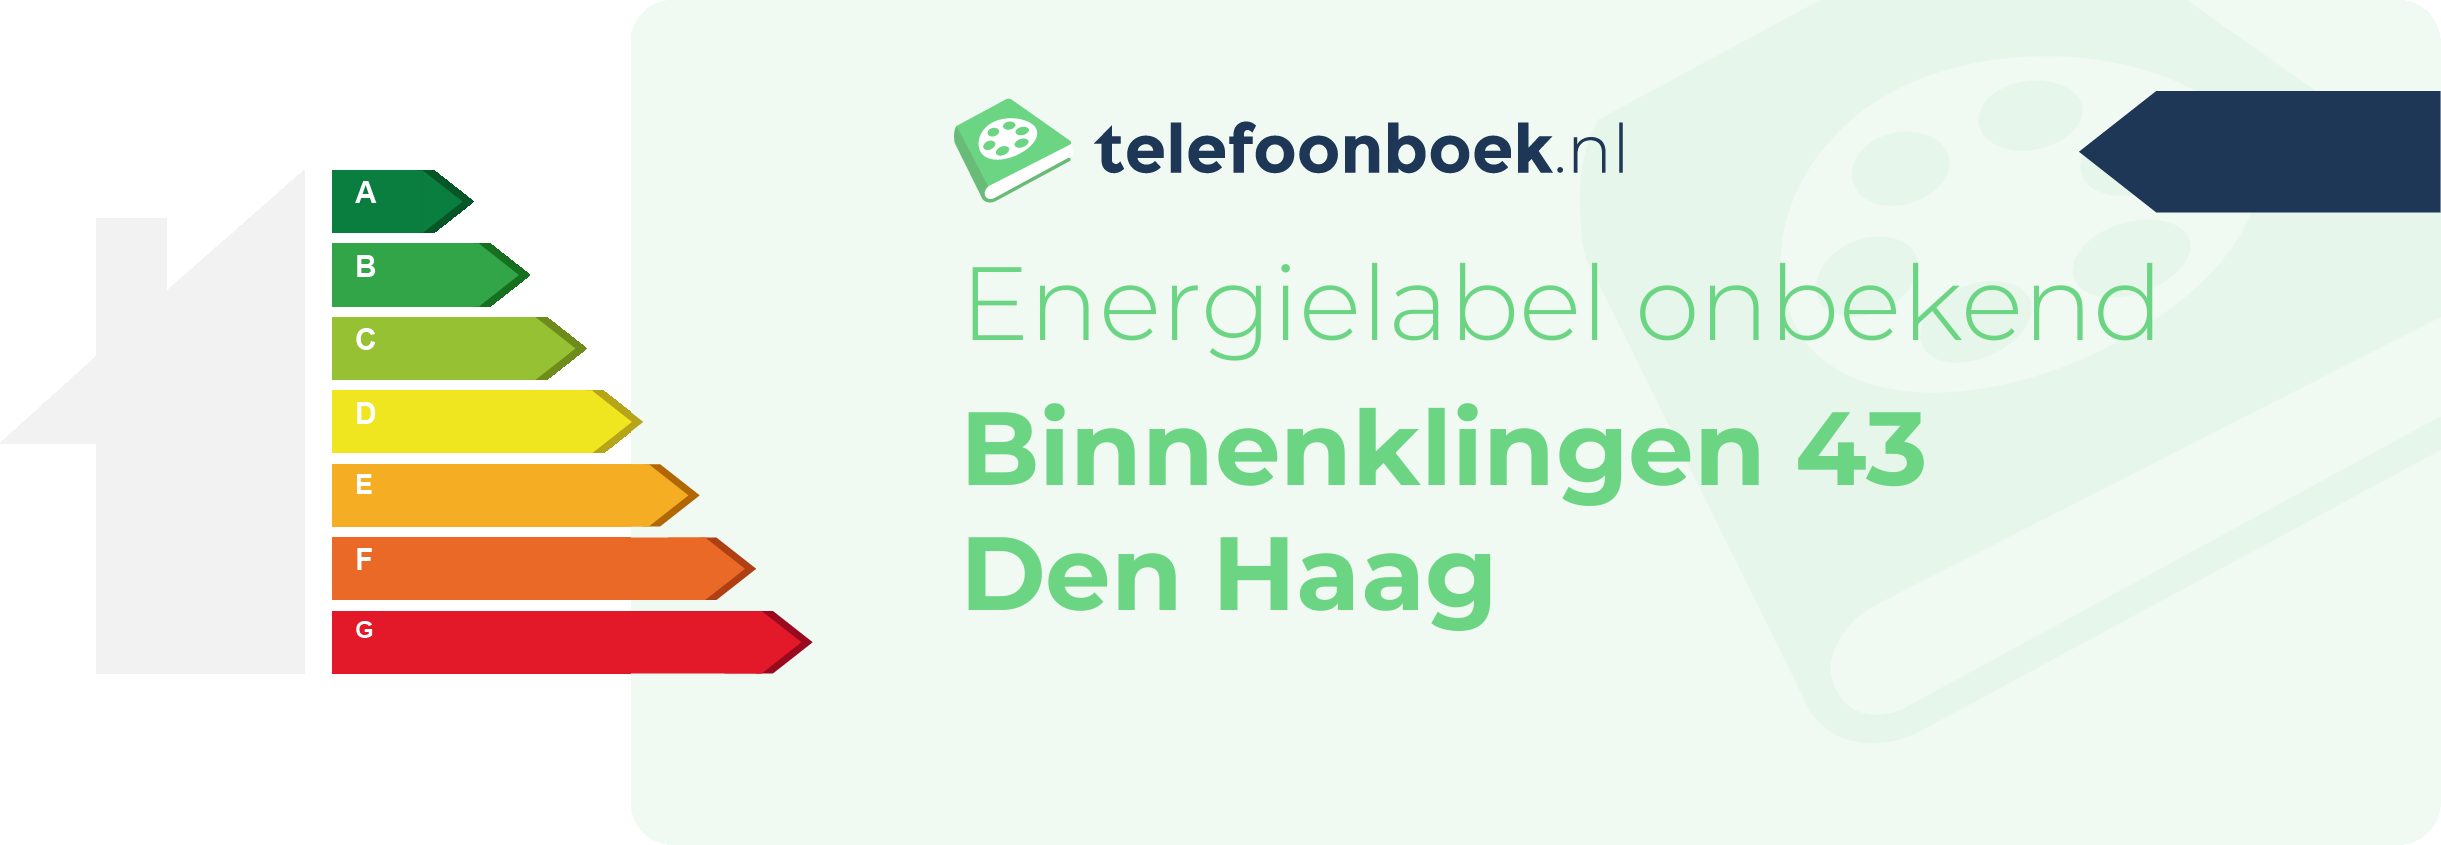 Energielabel Binnenklingen 43 Den Haag